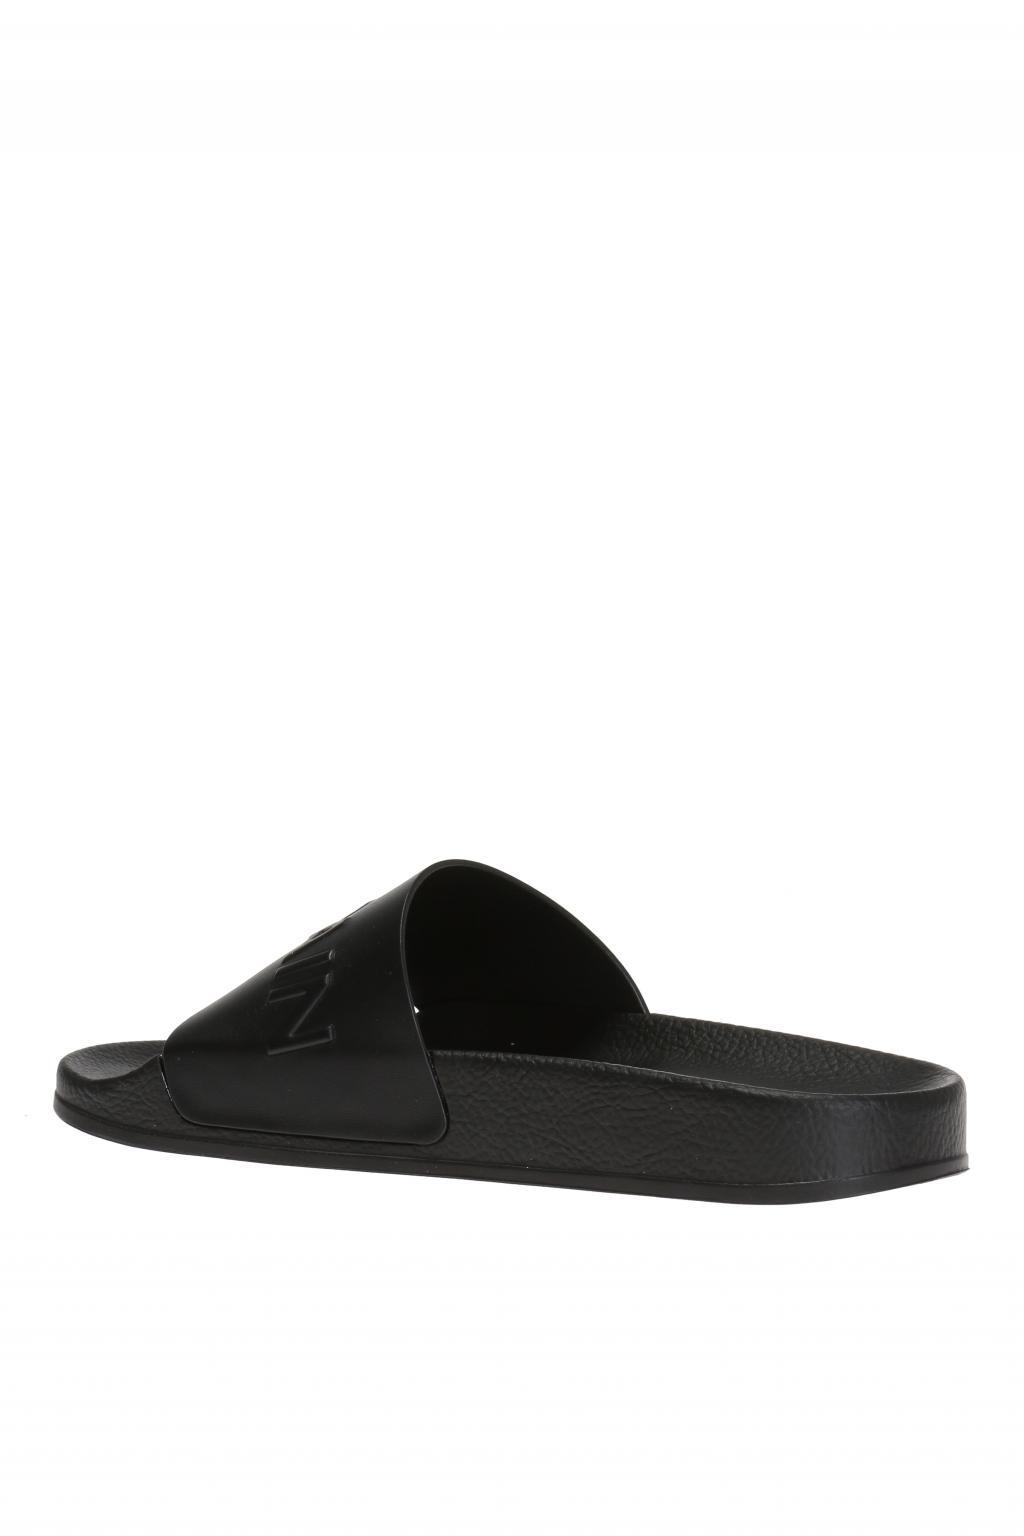 Balmain Leather Logo Slide Sandals in Black for Men - Lyst